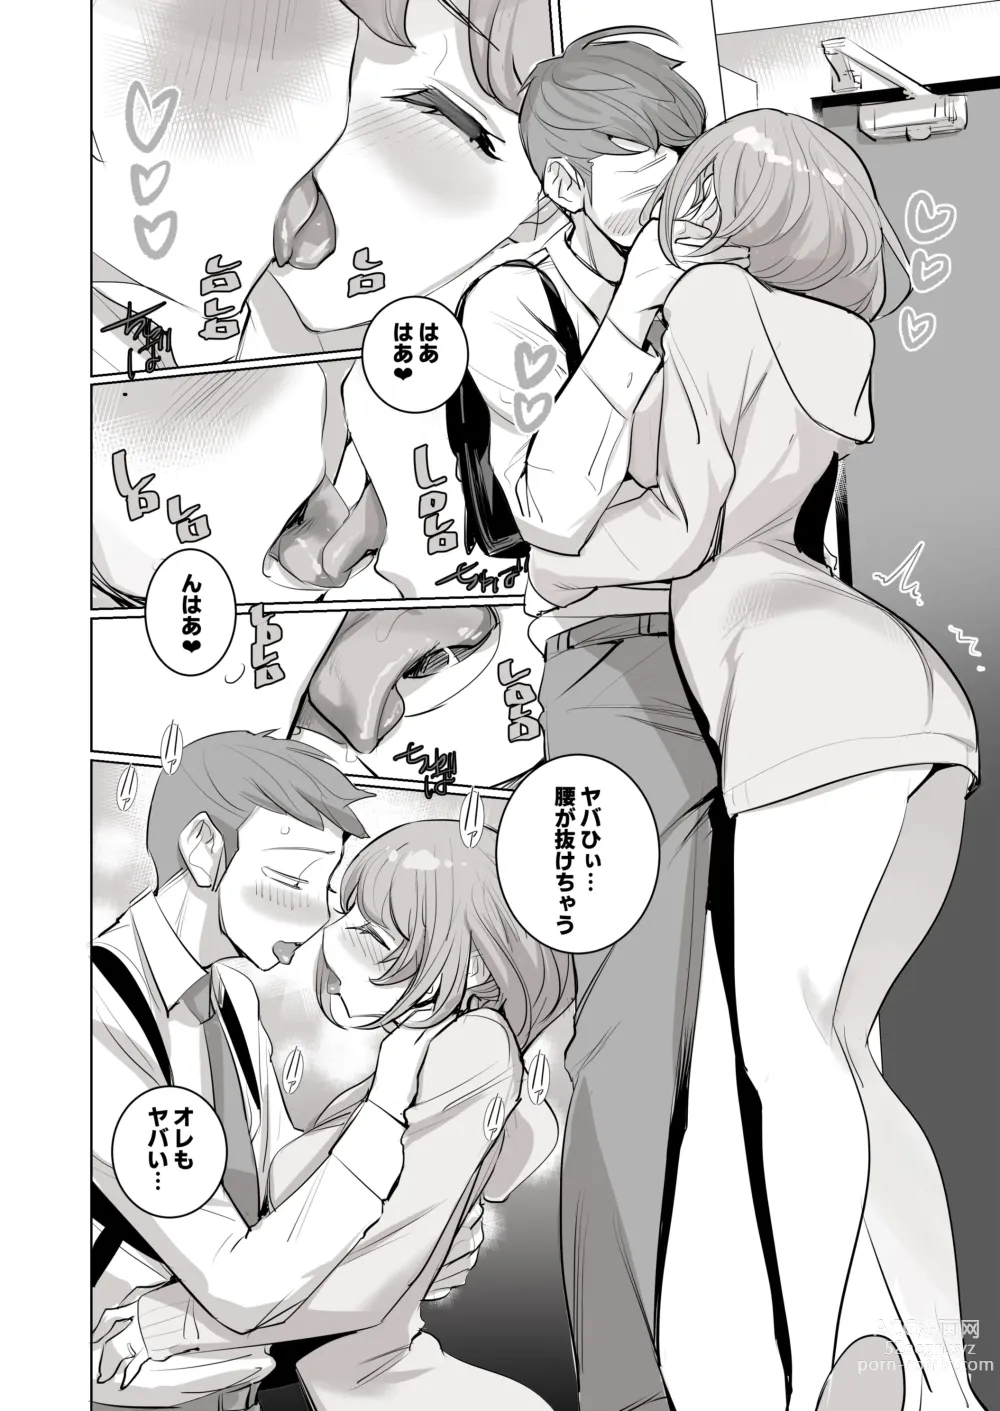 Page 5 of doujinshi 人気同人作家の妻とラブラブ新婚性活でも妻が好きすぎてNTRしてしまうボクなんです